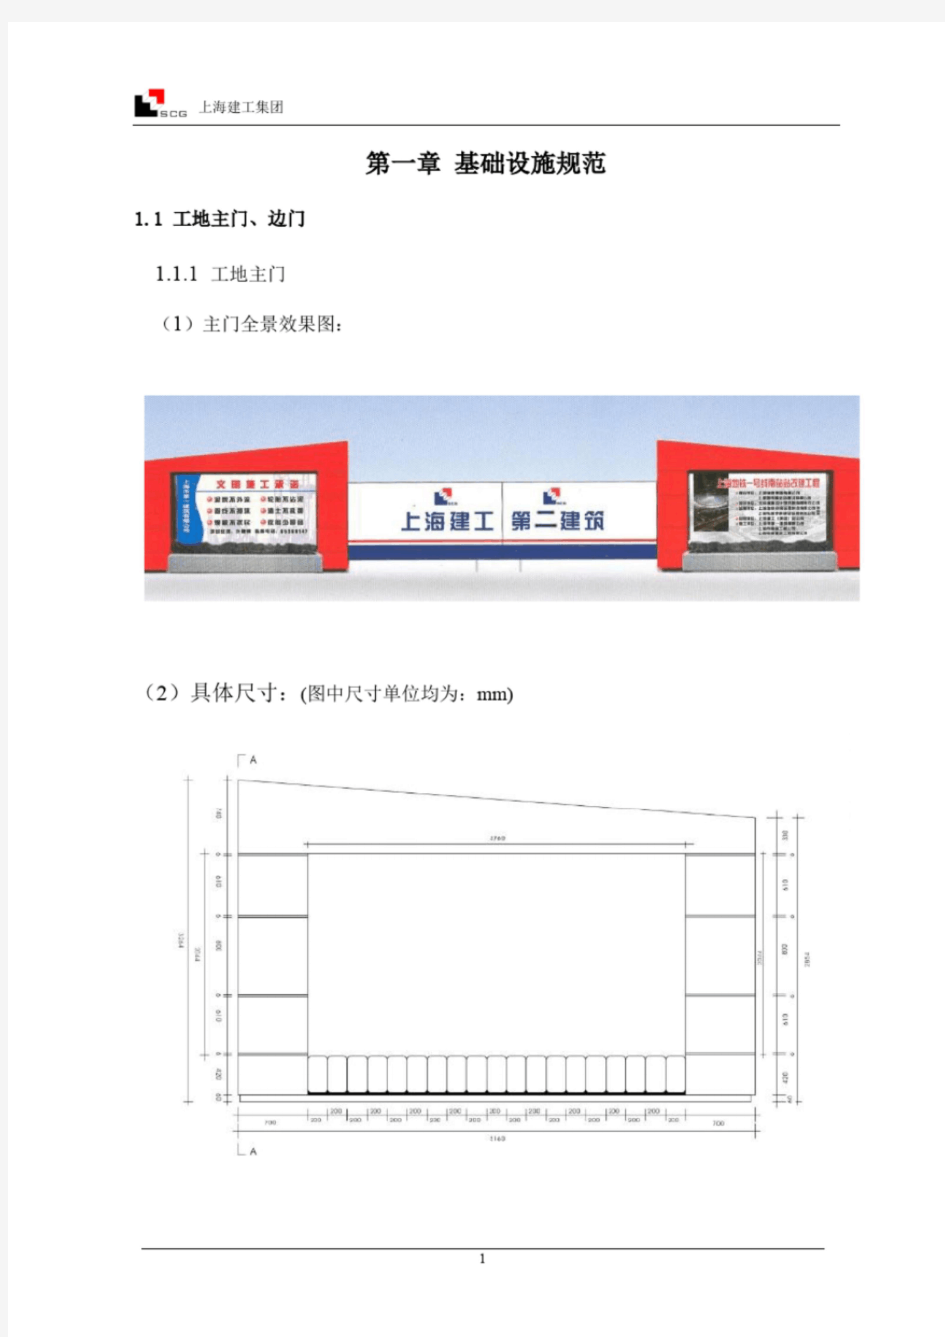 上海建工集团视觉系统(施工现场文明标准化)